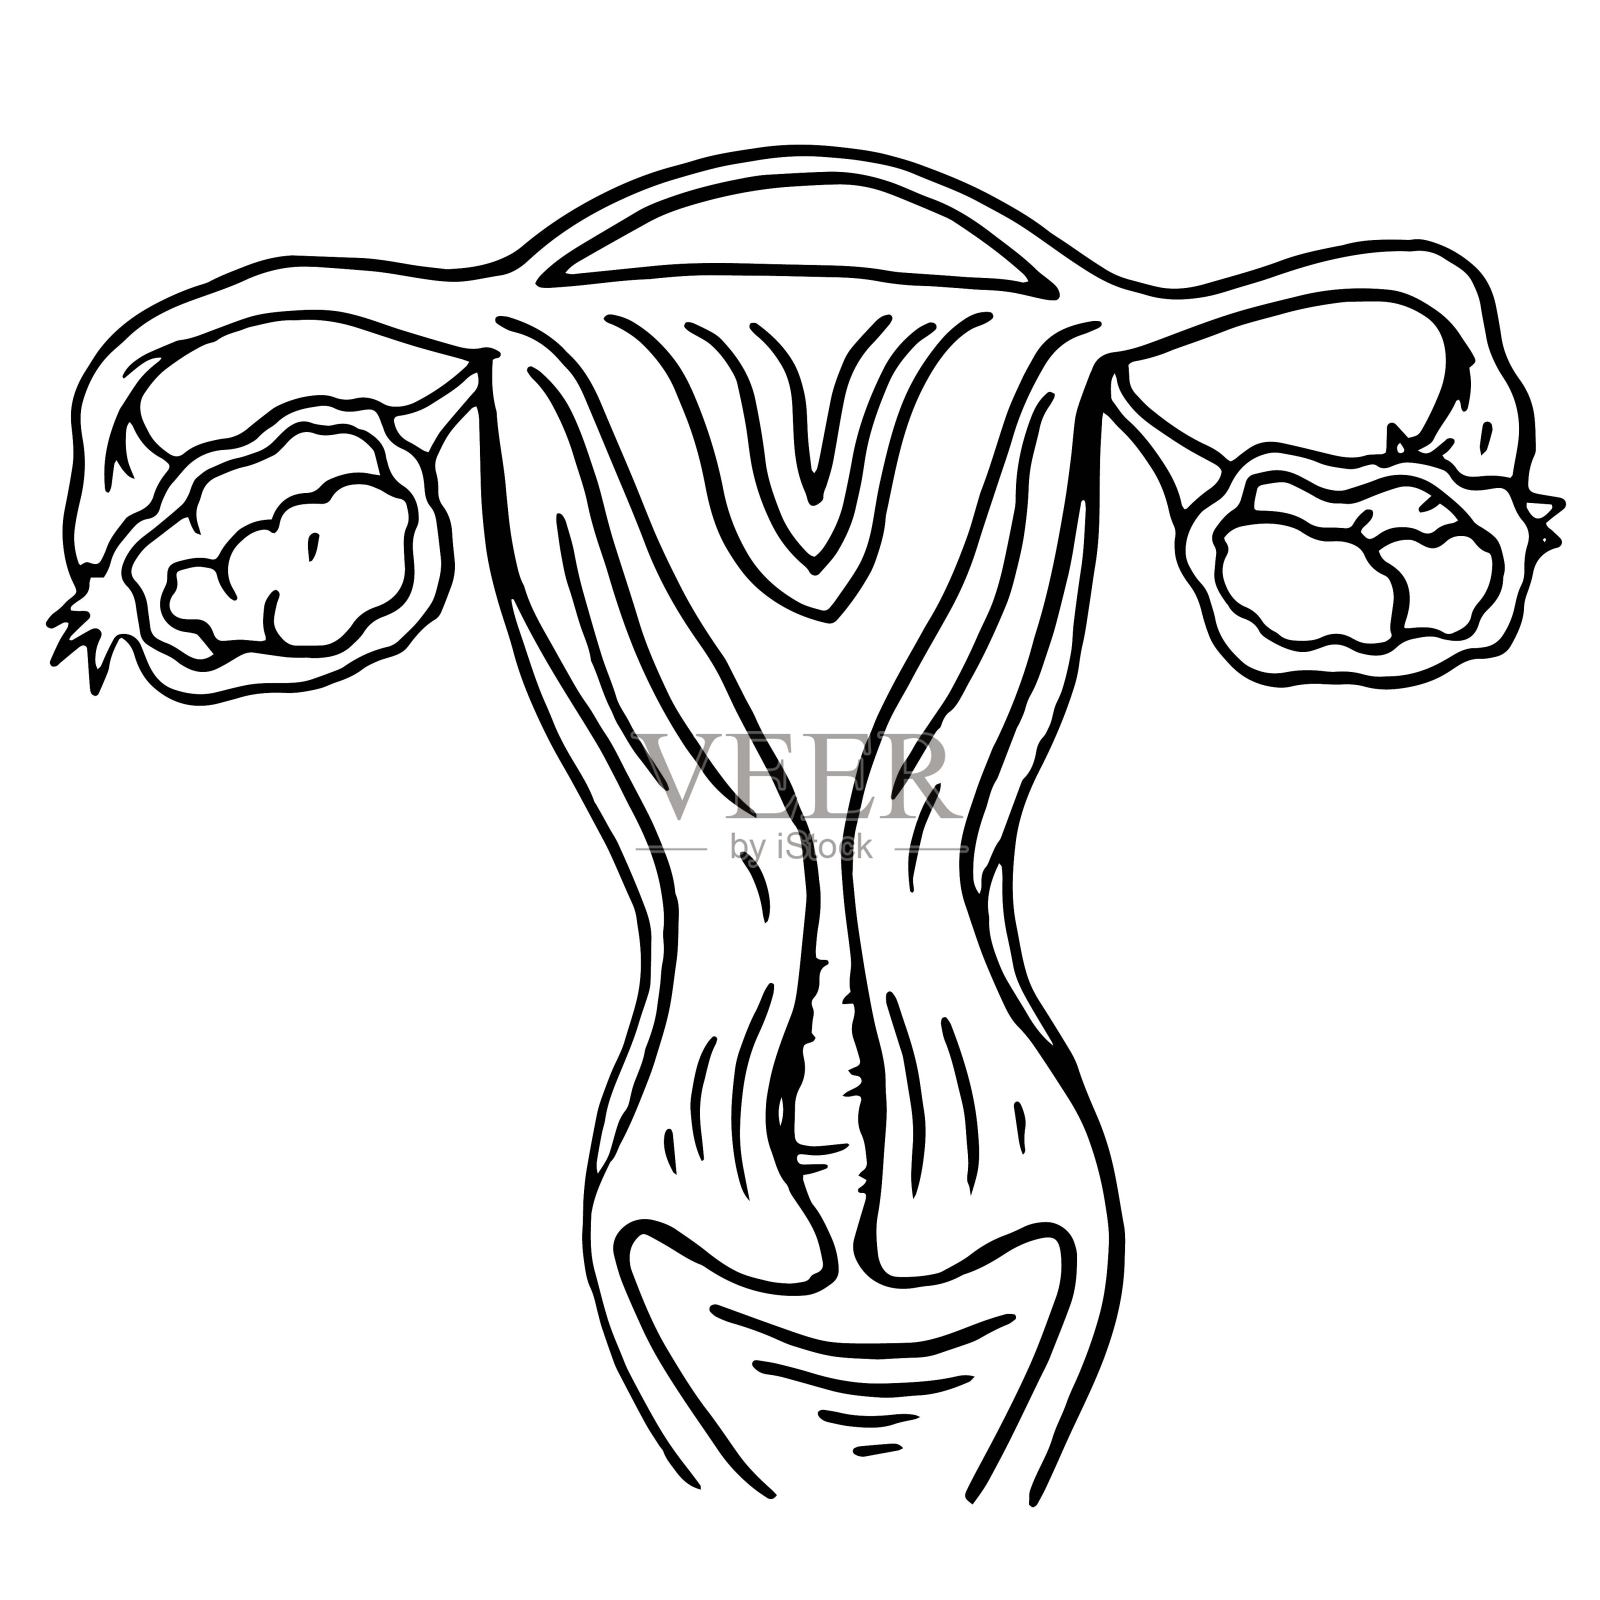 女性生殖器和男性生殖器主要区别是什么？ - 知乎